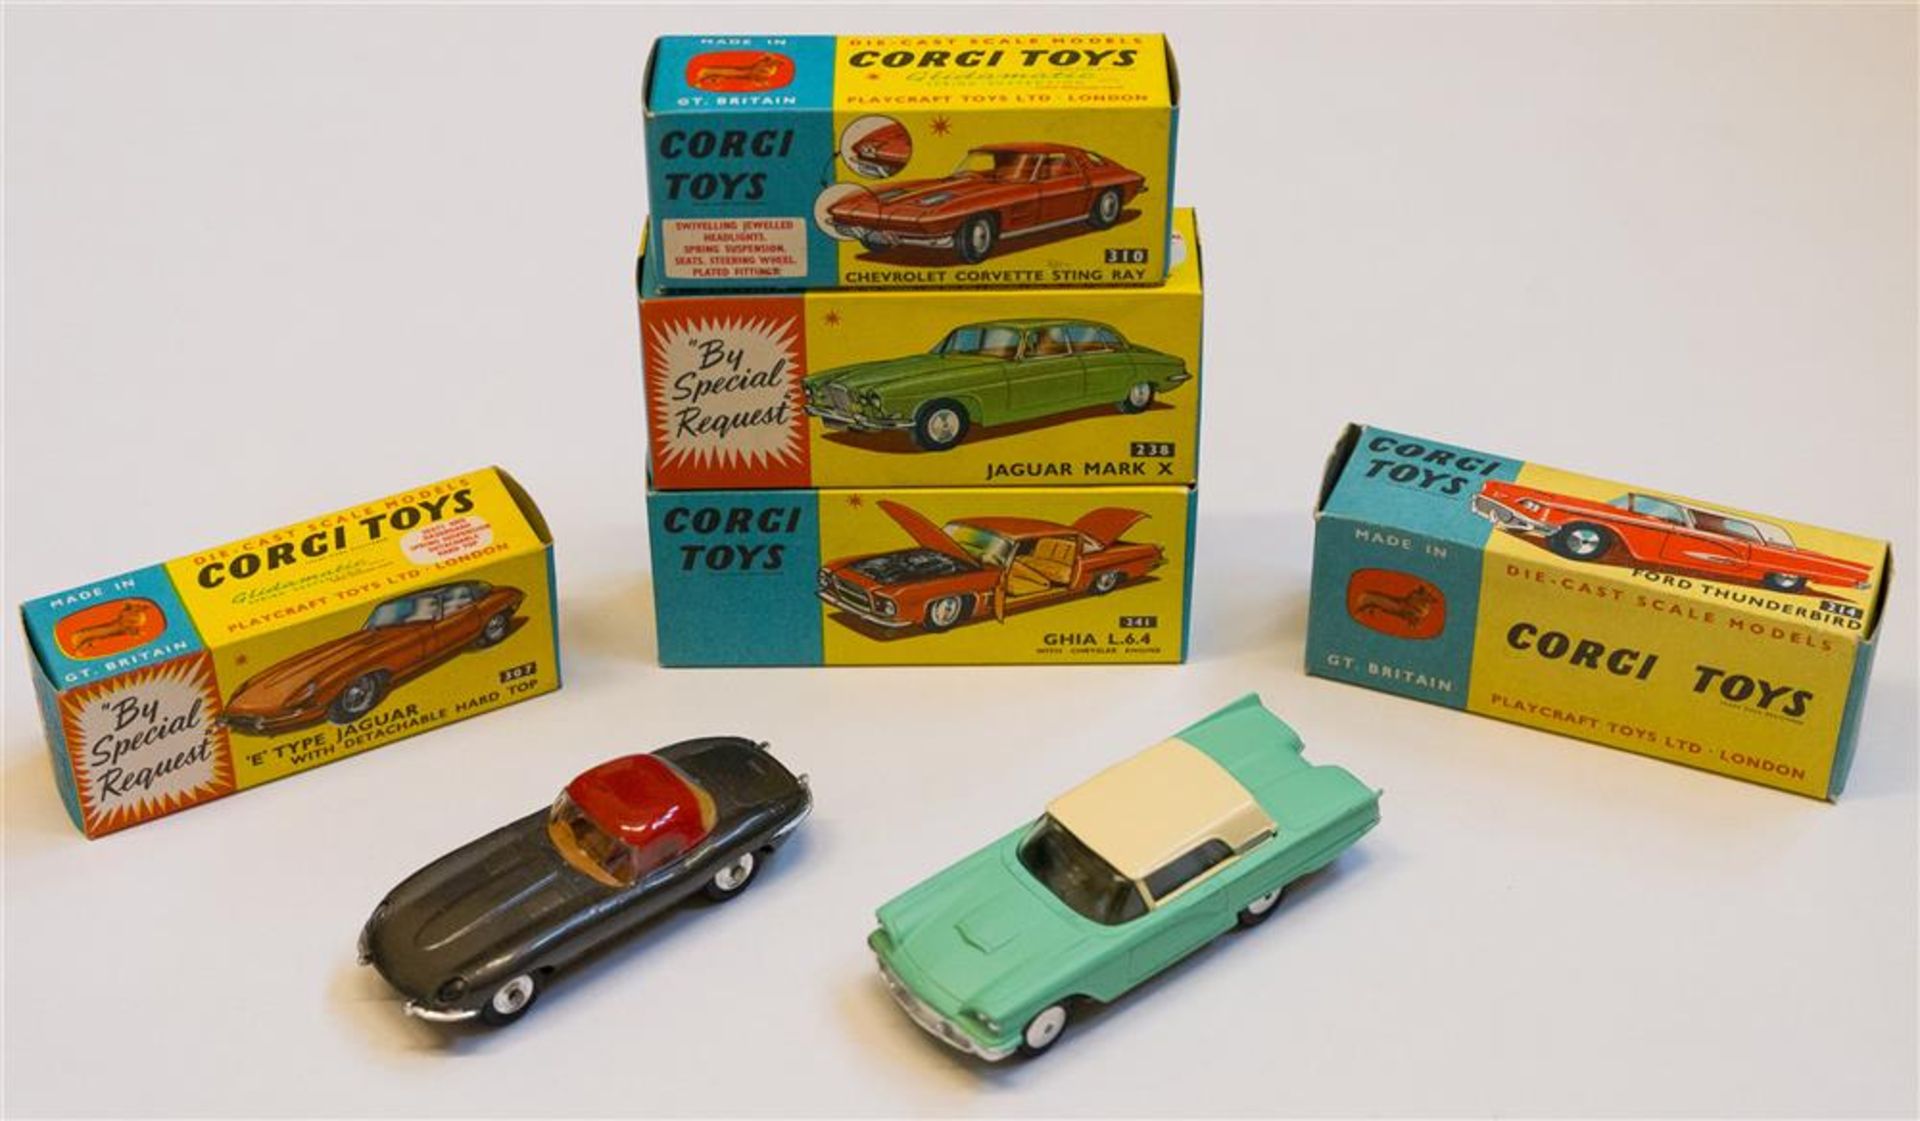 [Model cars] Corgi Toys. (1) 'E' Type Jaguar with Detachable Hard Top